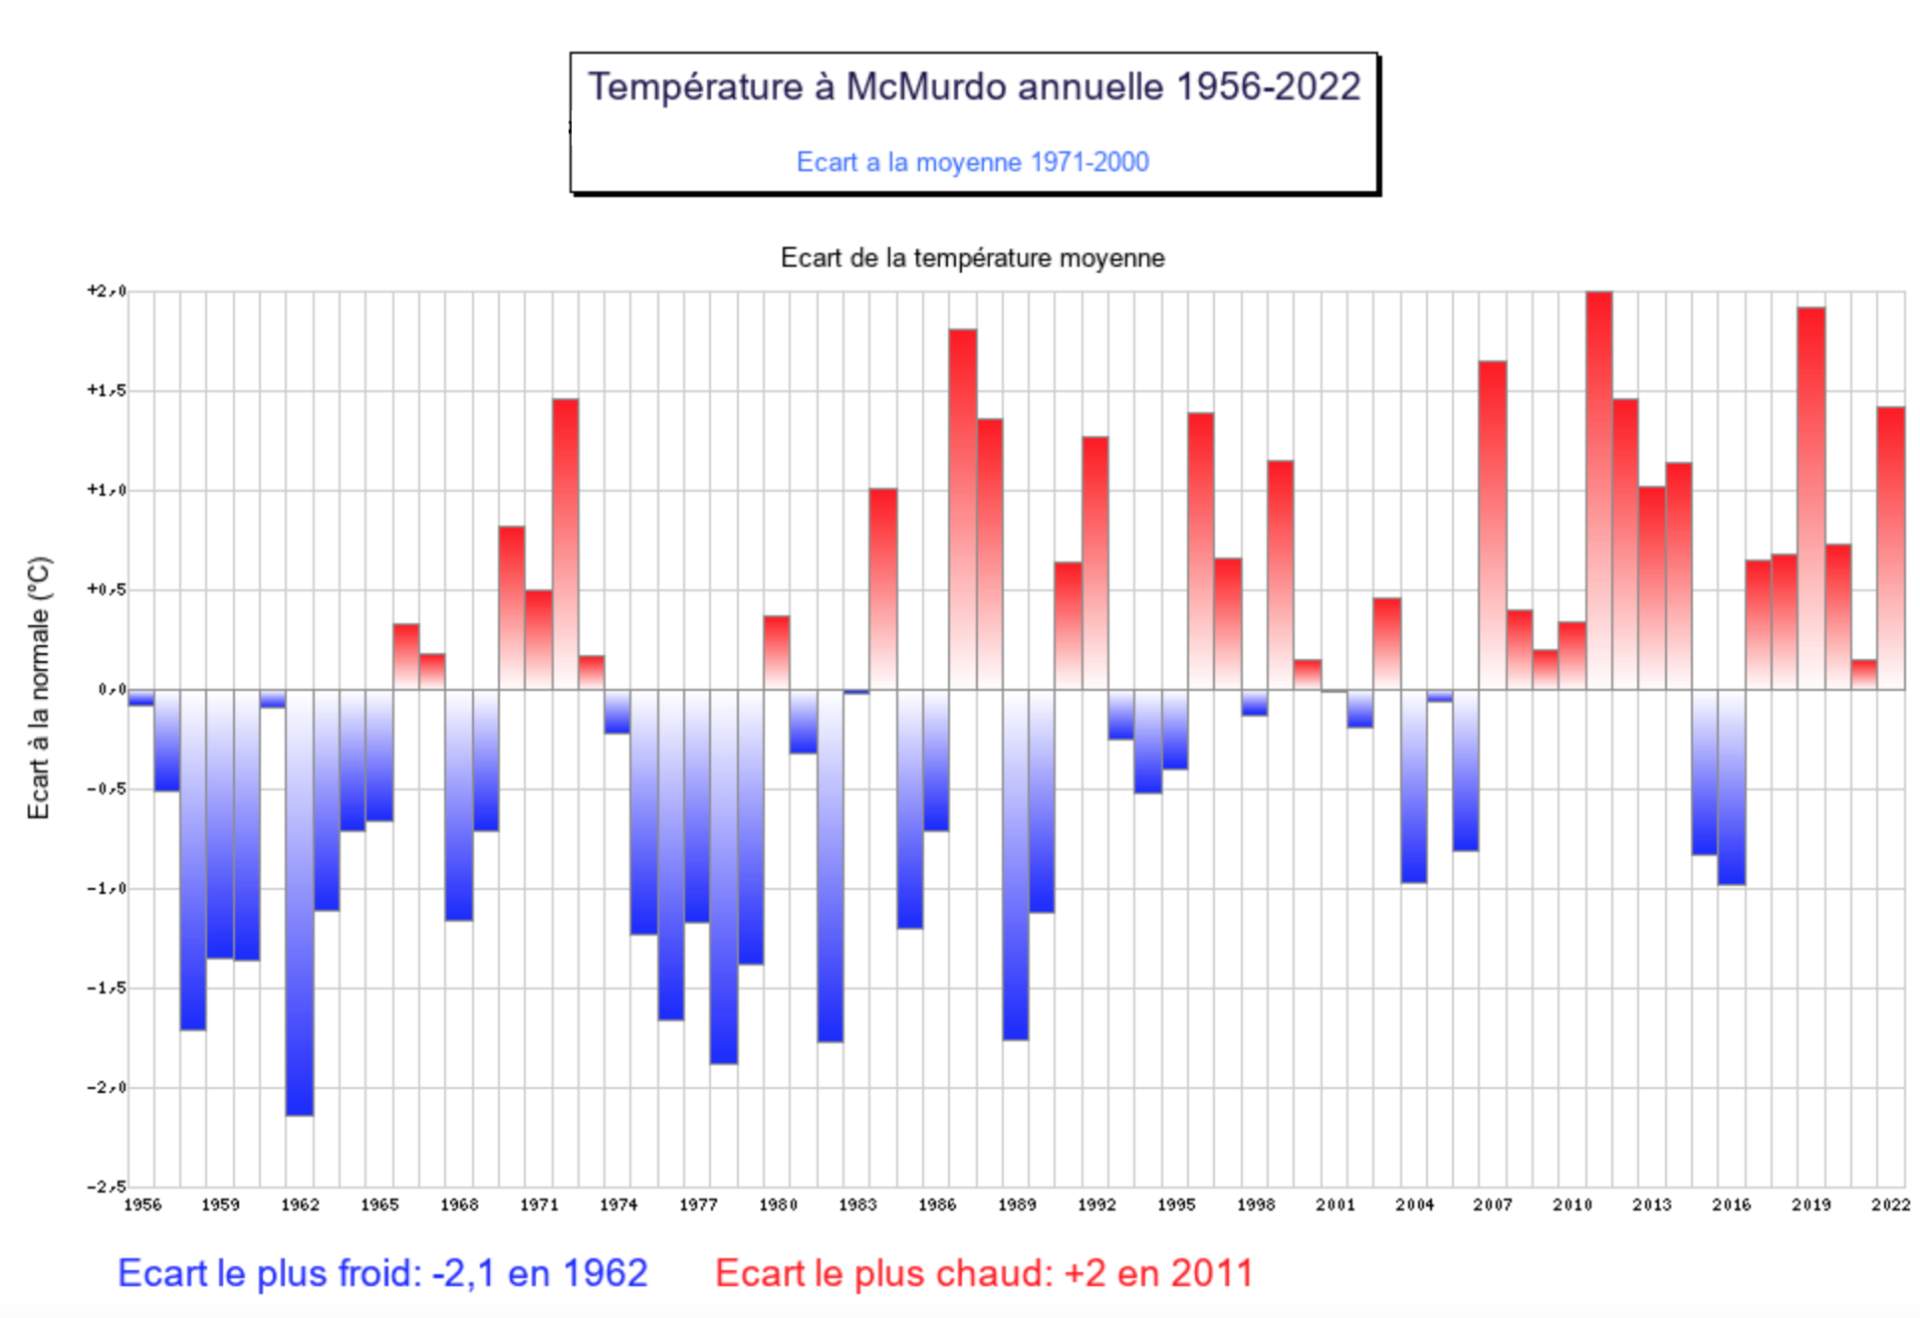 Ecart de la température moyenne annuelle à Mc Murdo; Source: Météo Climat